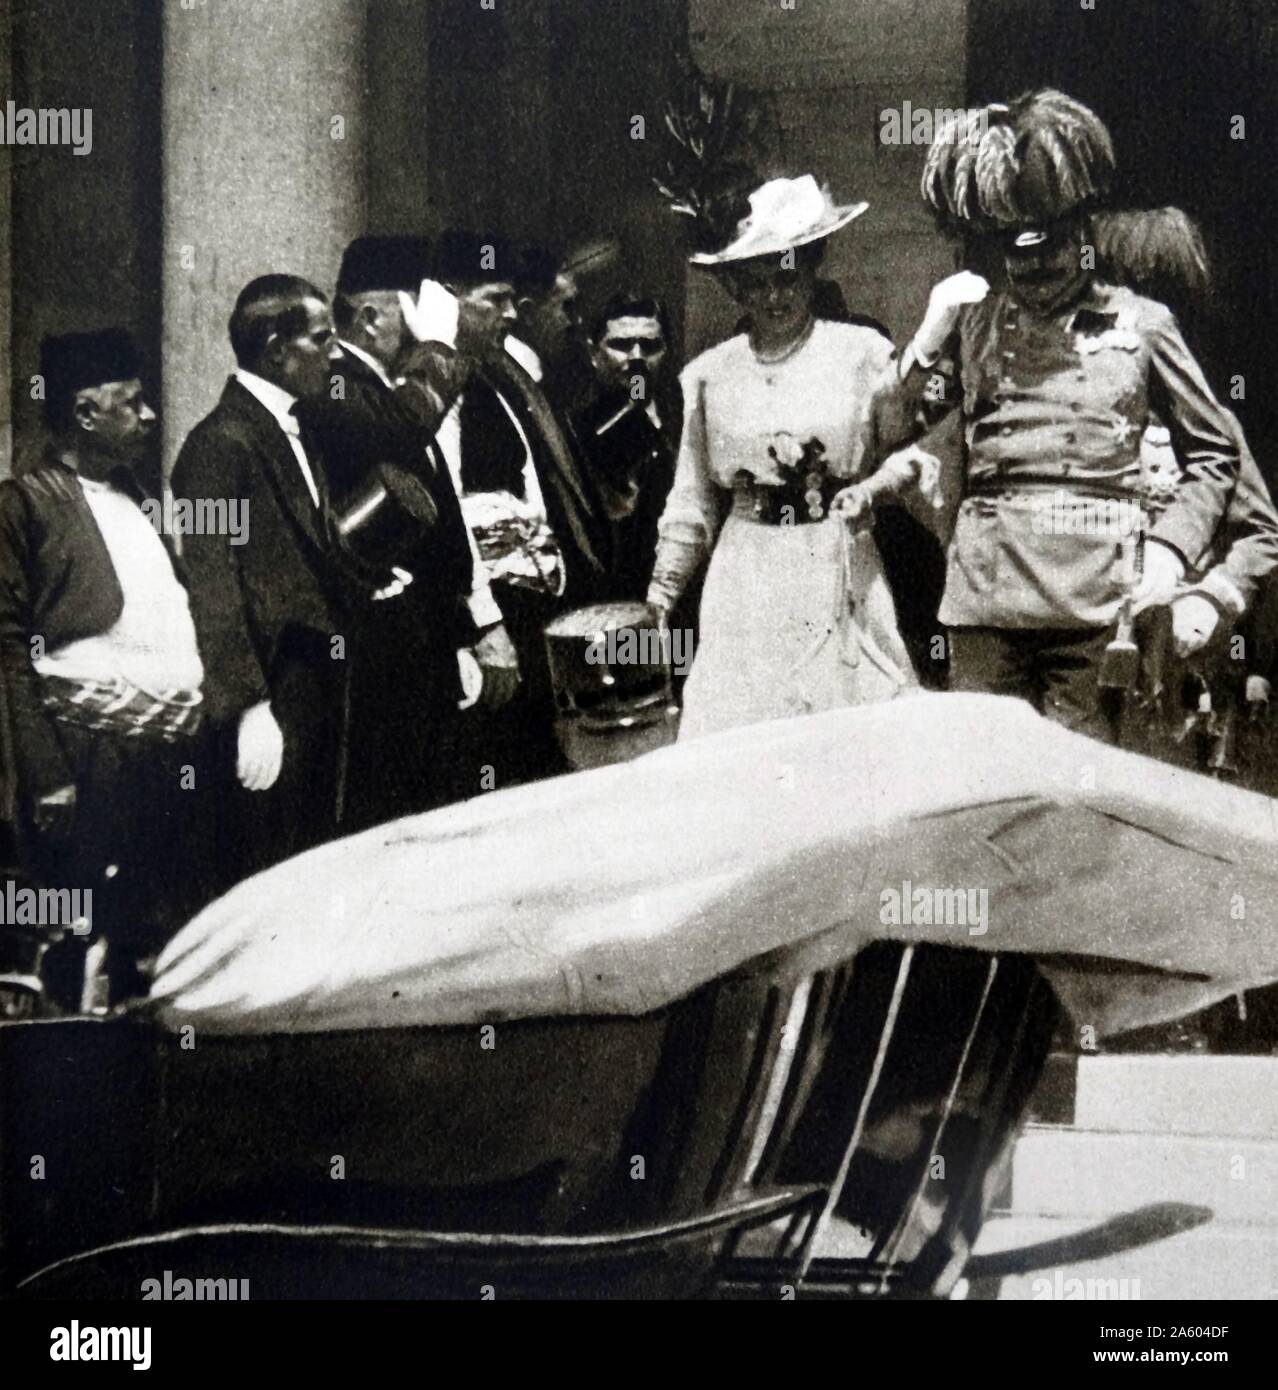 Foto von Erzherzog Franz Ferdinand von Österreich (1875-1914) und seiner Frau Sophie, Herzogin von Hohenberg (1868-1914) verlassen der Sarajevo-Senat, fünf Minuten, bevor er sie geschossen und getötet durch Gavrilo Princip (1894-1918) der große Krieg auslösen. Datiert 1914 Stockfoto